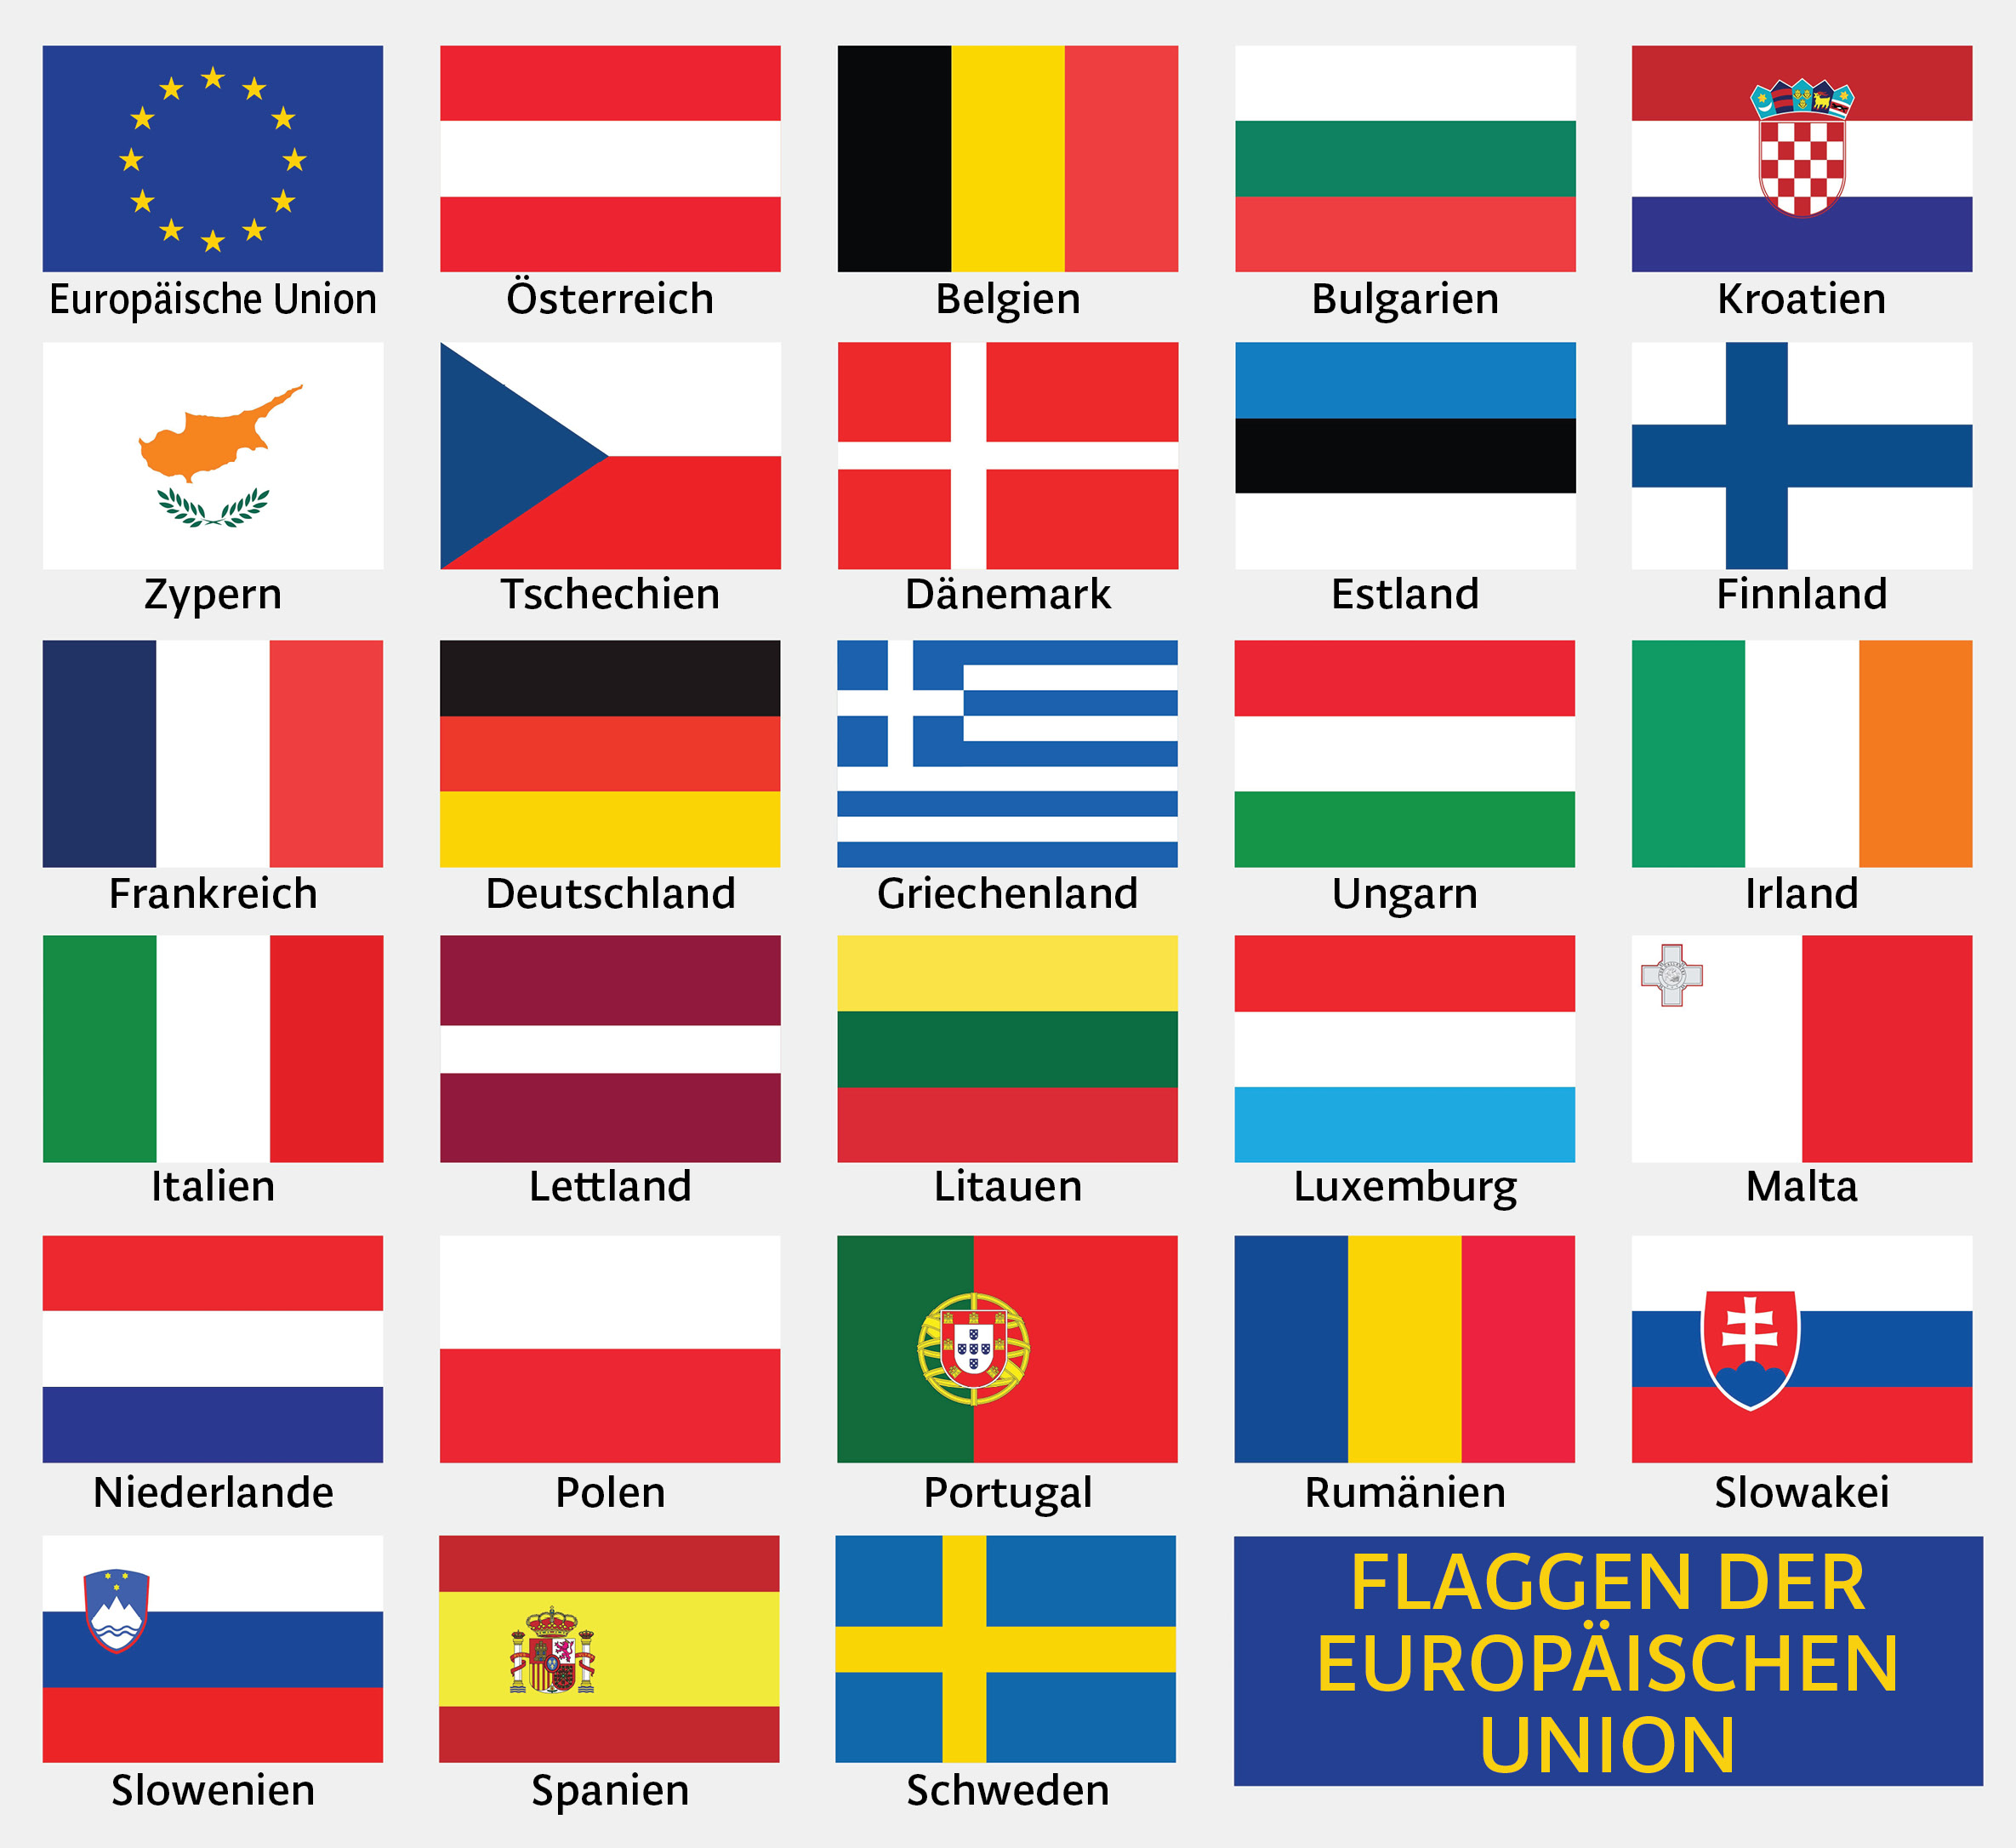 Slike prikazuju zastave država Europske unije.